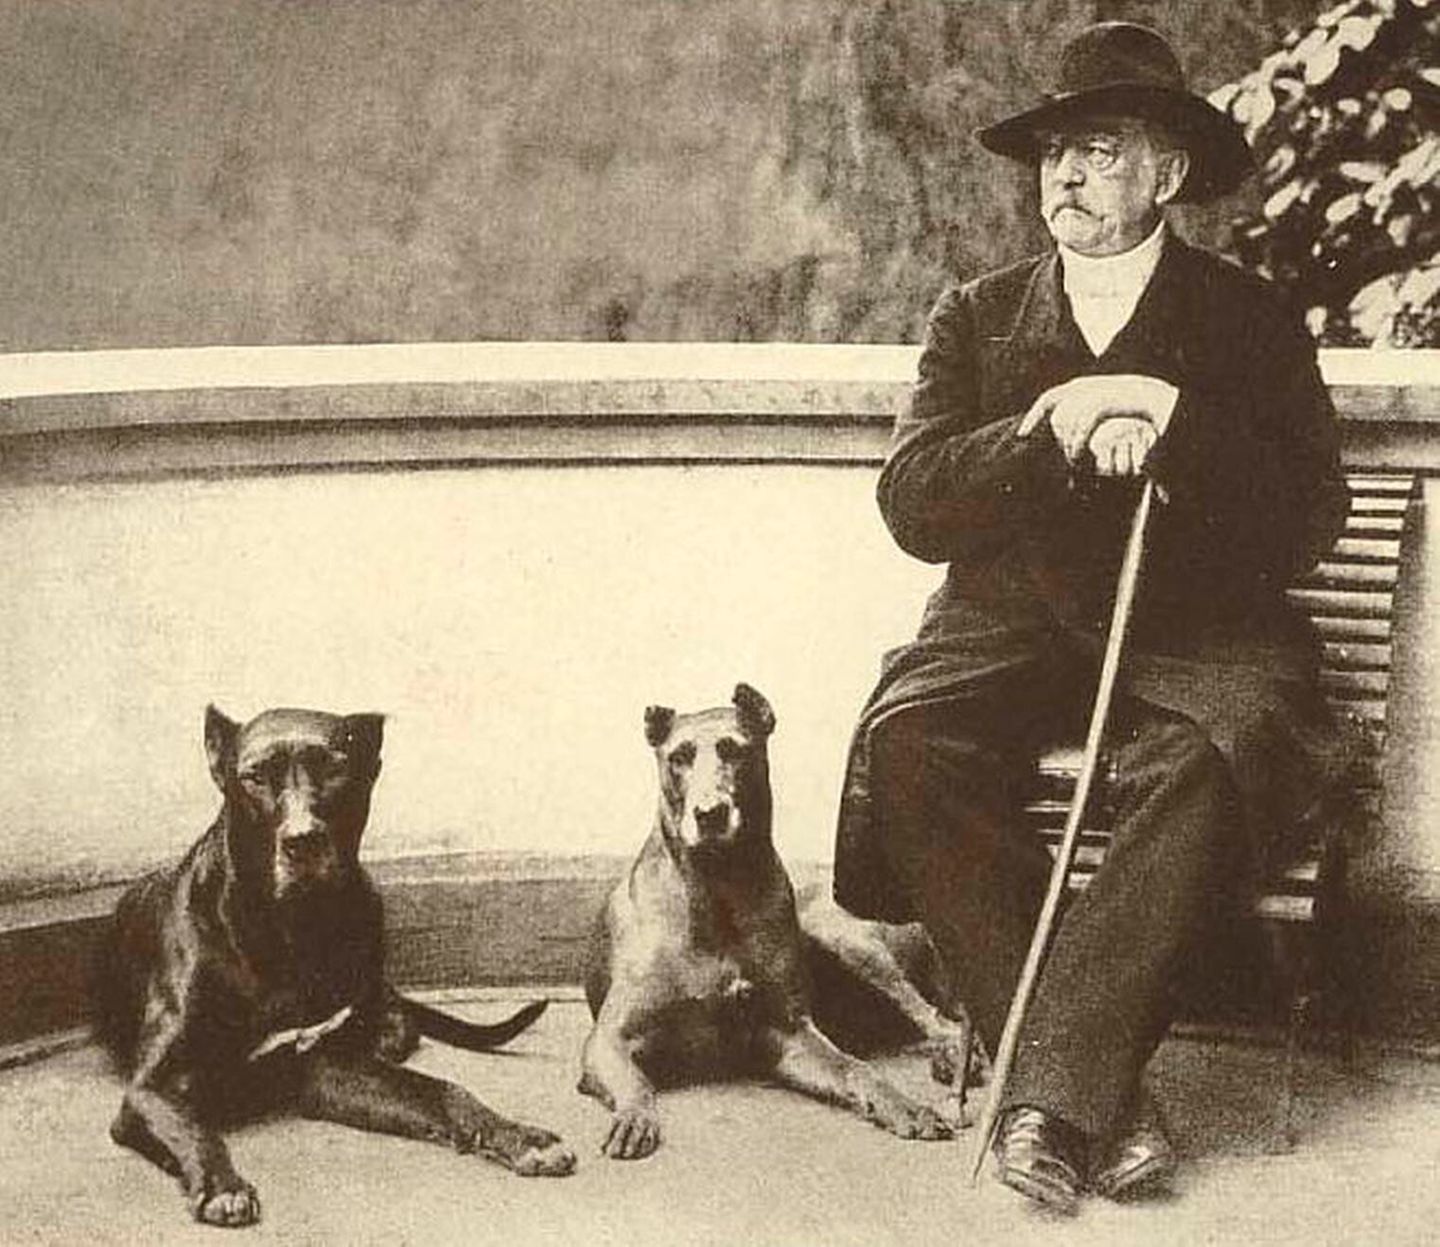 Bismarck und seine Doggen: Die Zuneigung des Staatsmanns zu seinen Hunden war im Deutschen Kaiserreich legendär